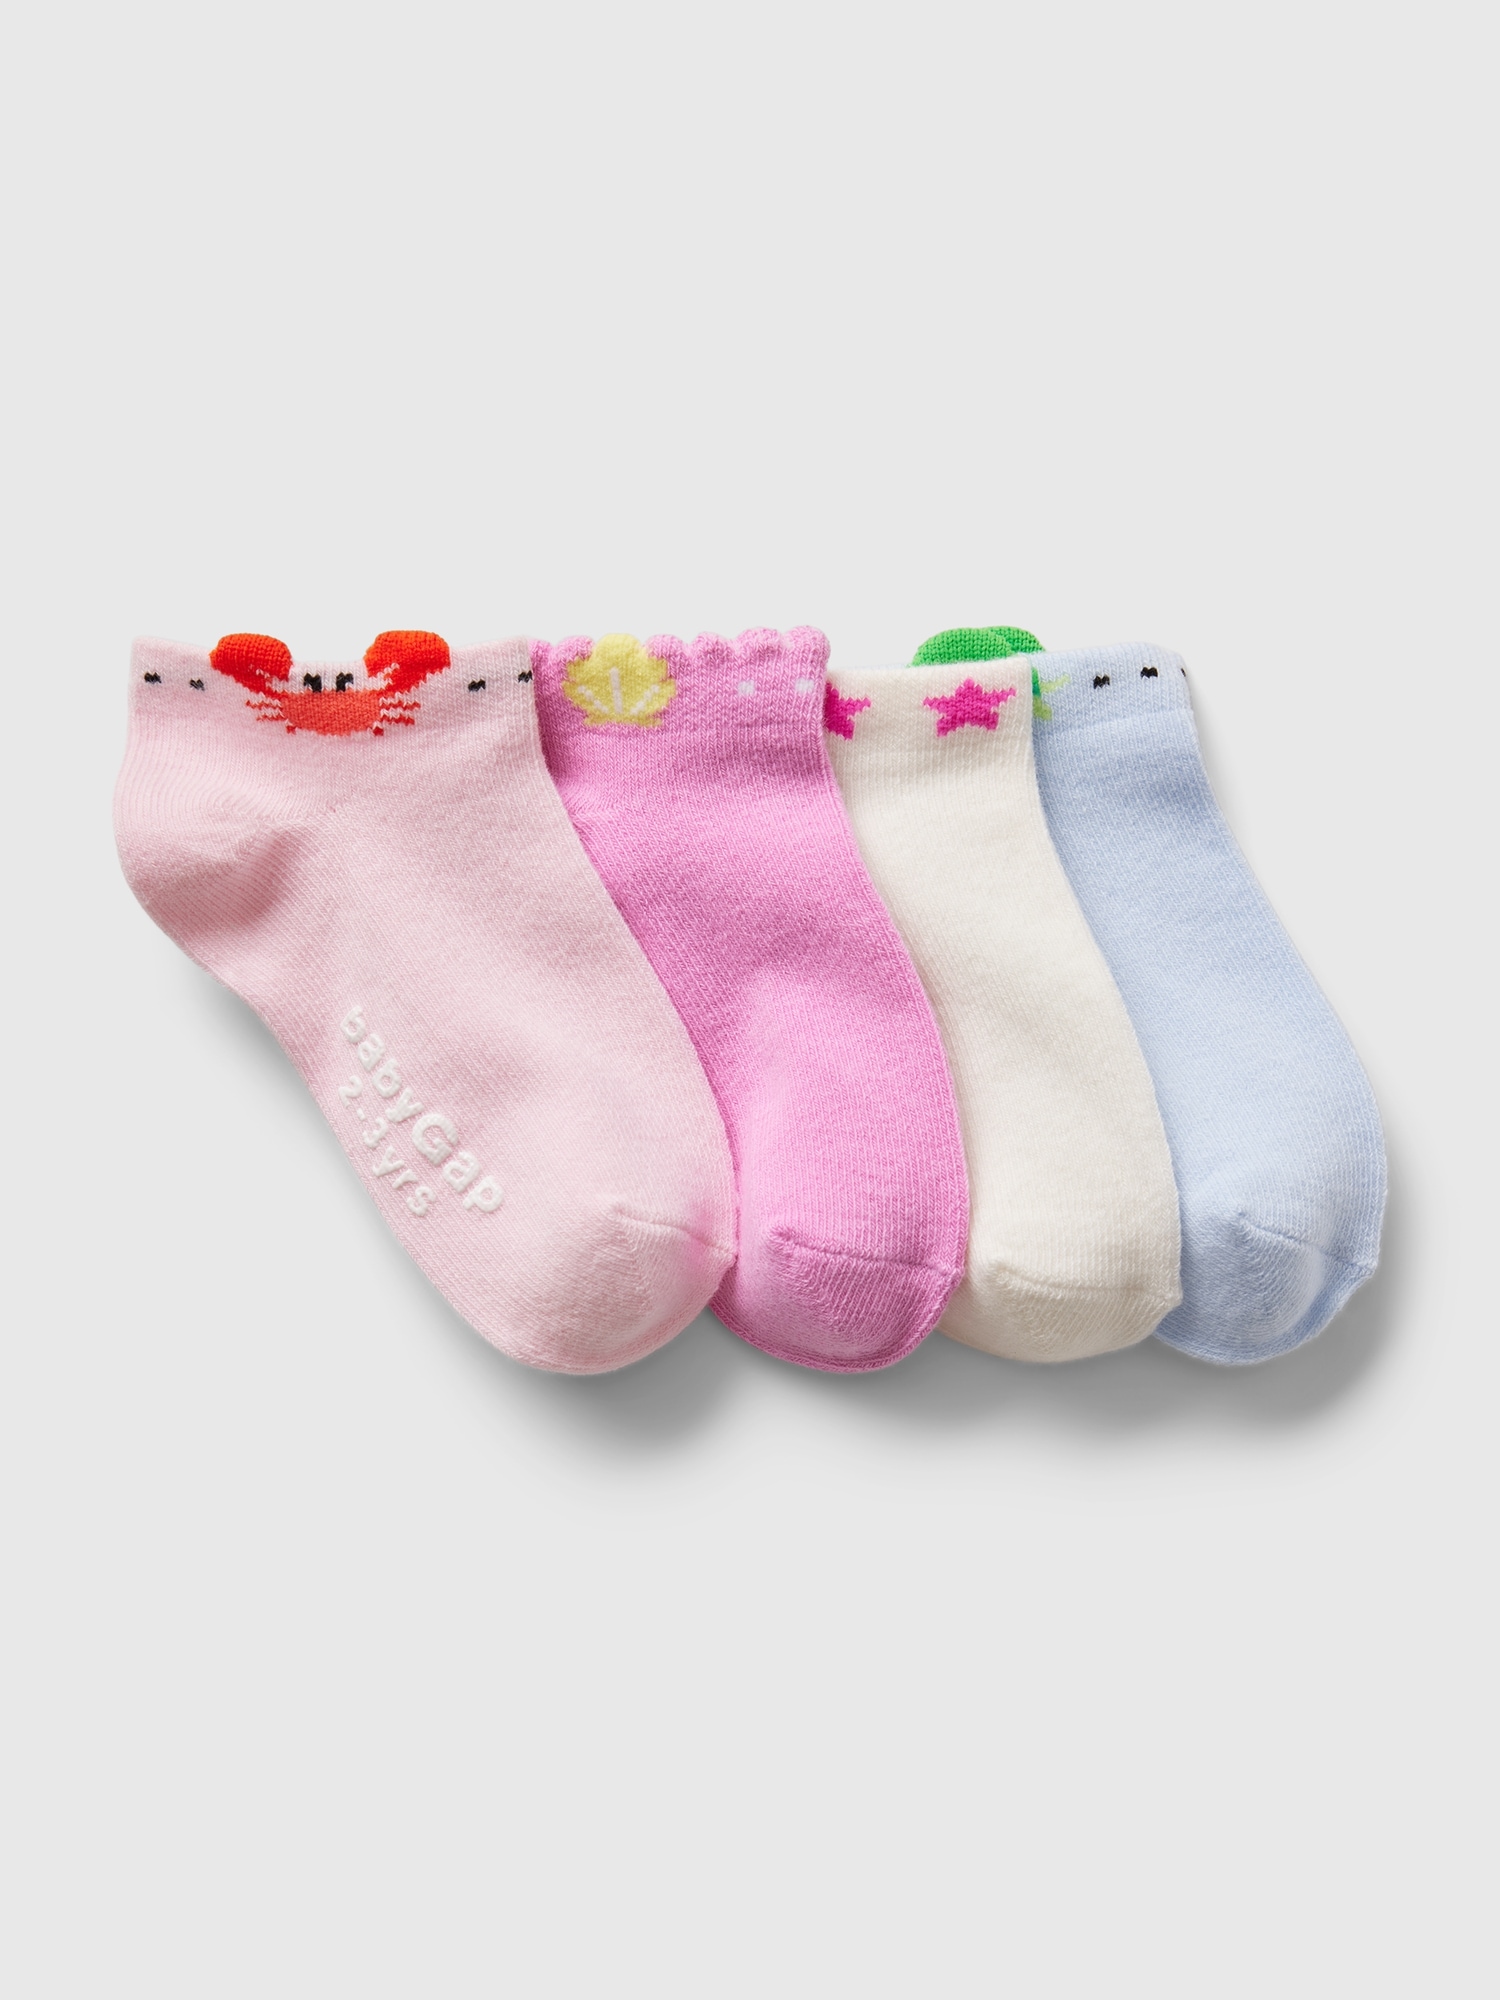 Toddler Crew Socks (4-Pack